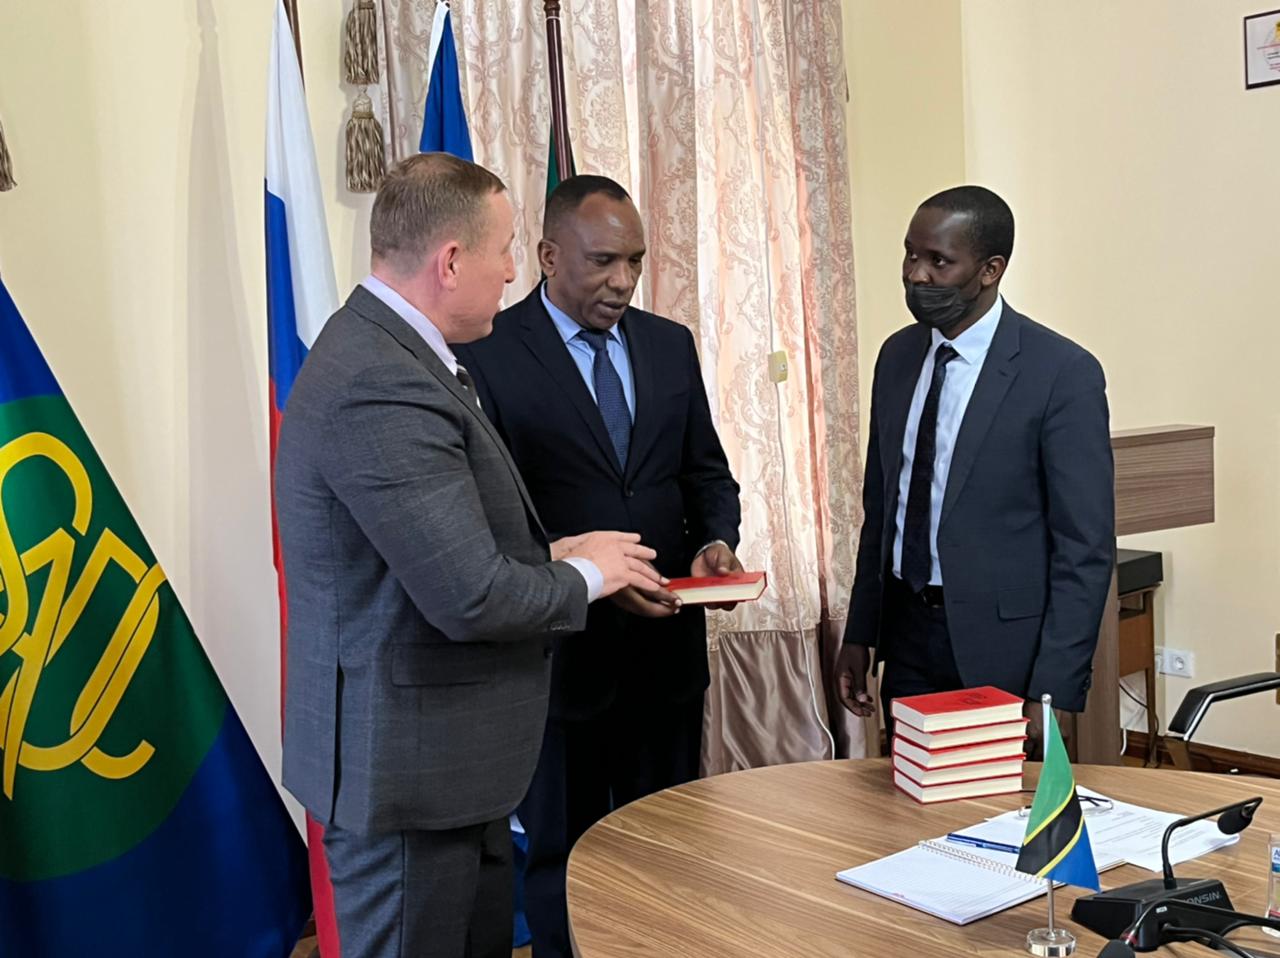 Бизнес-посол Деловой России в Танзании Юрий Коробов рассказал о встрече с послом Танзании Фредриком Ибрахим Кибута